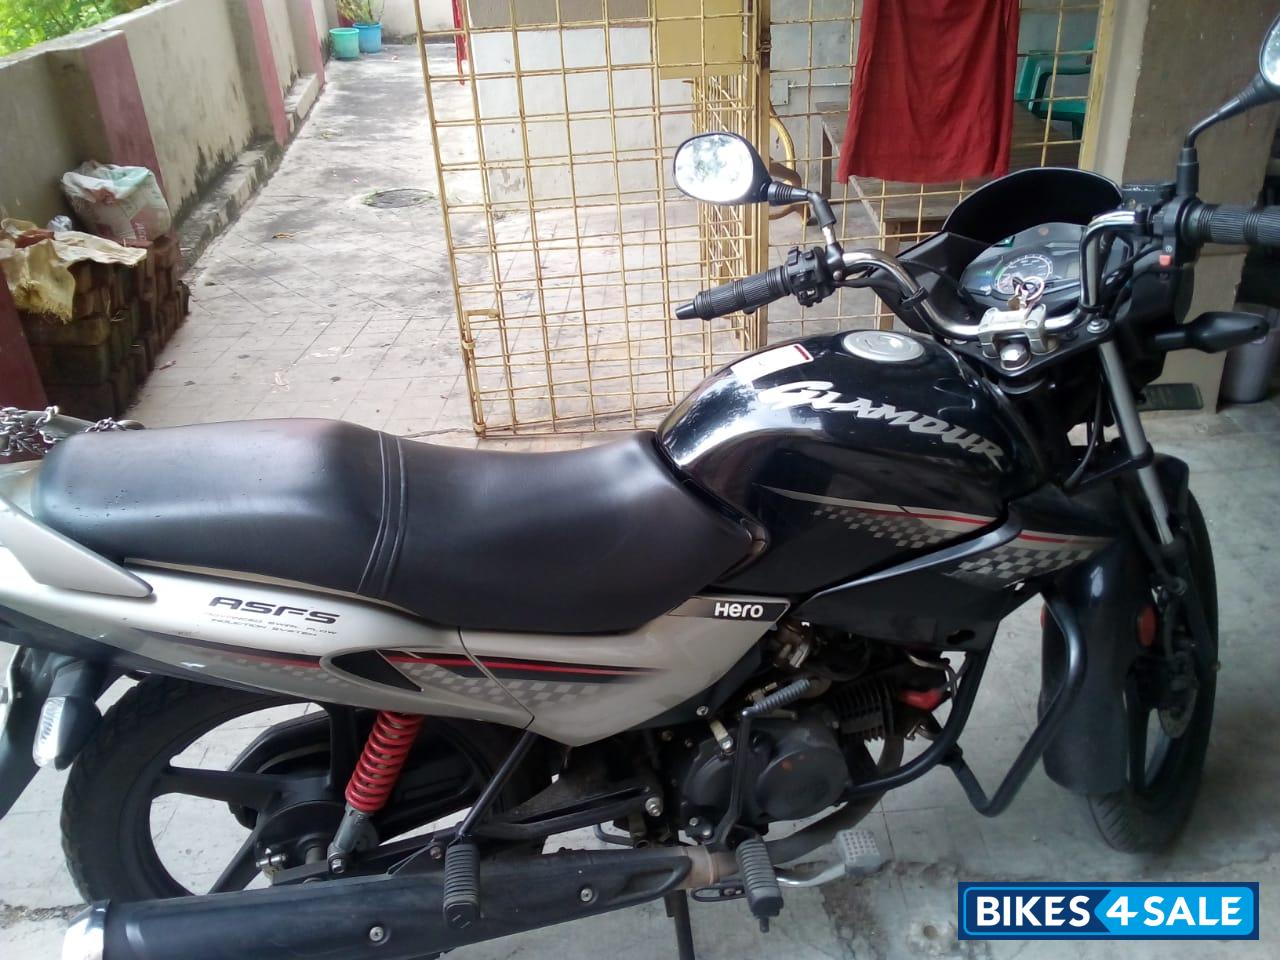 Hero Honda Glamour Used Bike Price In Kolkata لم يسبق له مثيل